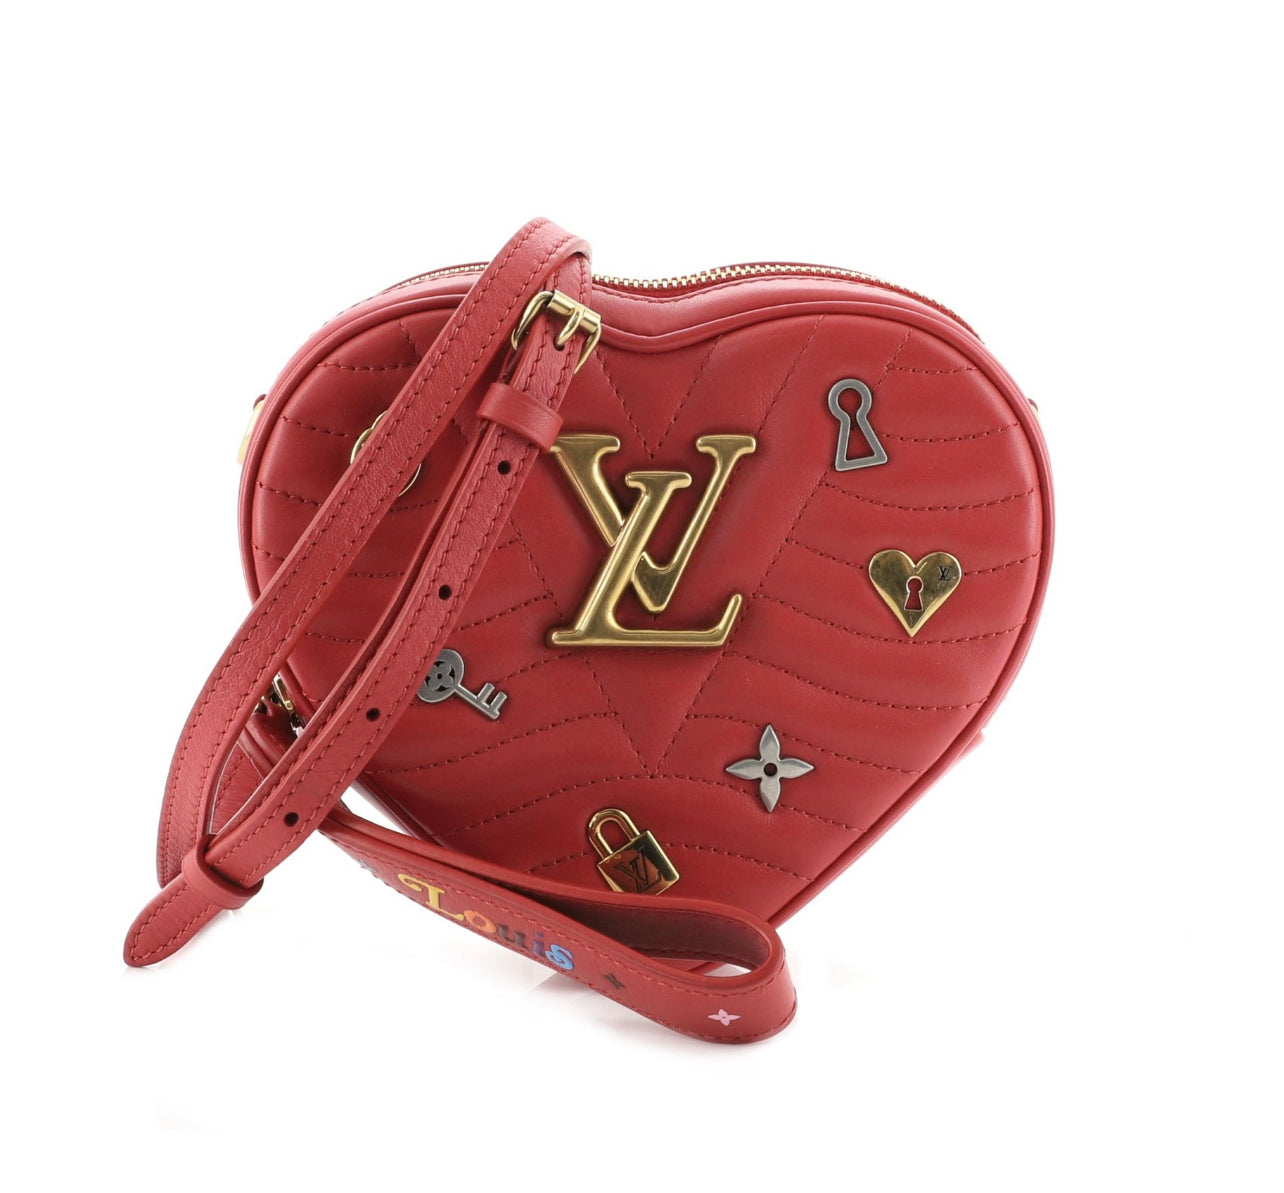 SOLD** NEW - LV New Wave Heart-Shaped Red Calfskin Shoulder Bag